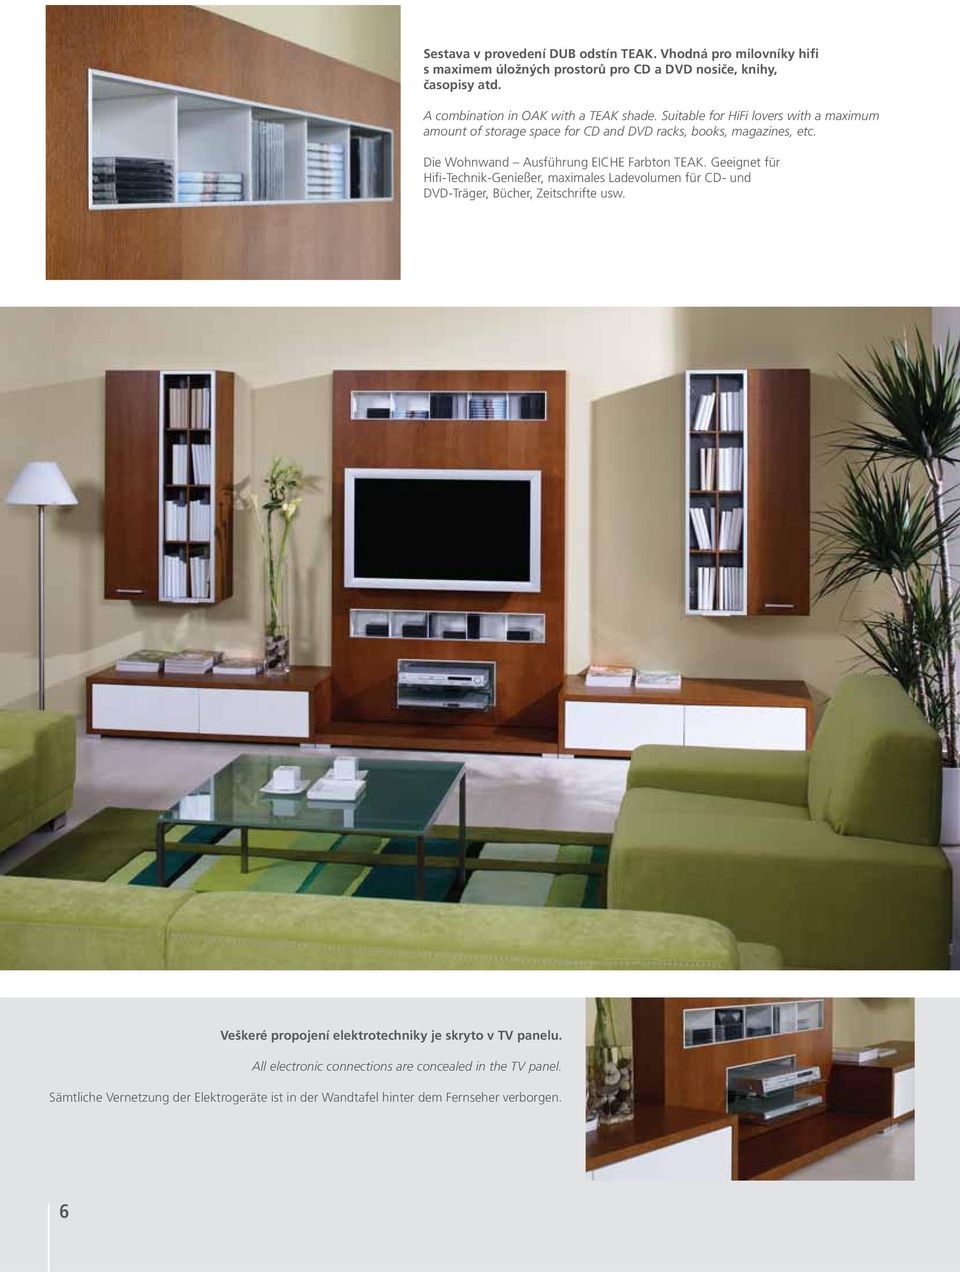 Die Wohnwand Ausführung EICHE Farbton TEAK. Geeignet für Hifi-Technik-Genießer, maximales Ladevolumen für CD- und DVD-Träger, Bücher, Zeitschrifte usw.